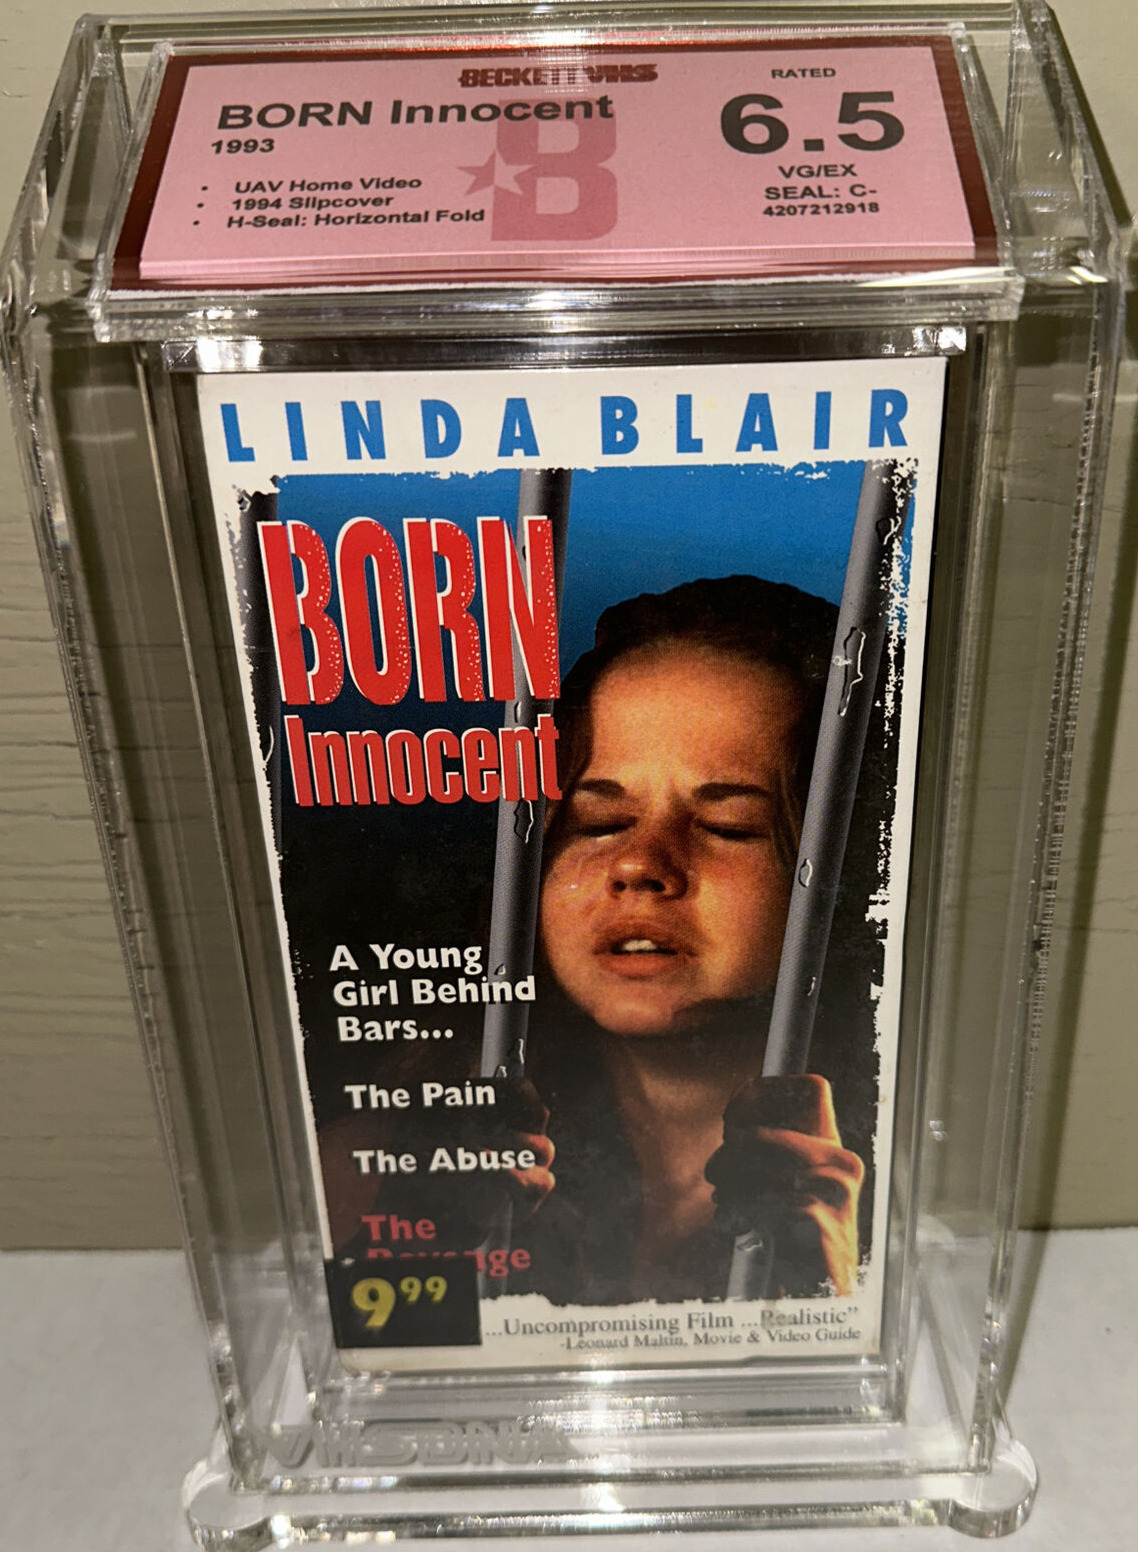 Linda Blair BORN INNOCENT VHS Movie Tape 1974/1994 UAV Home Video Beckett BGS